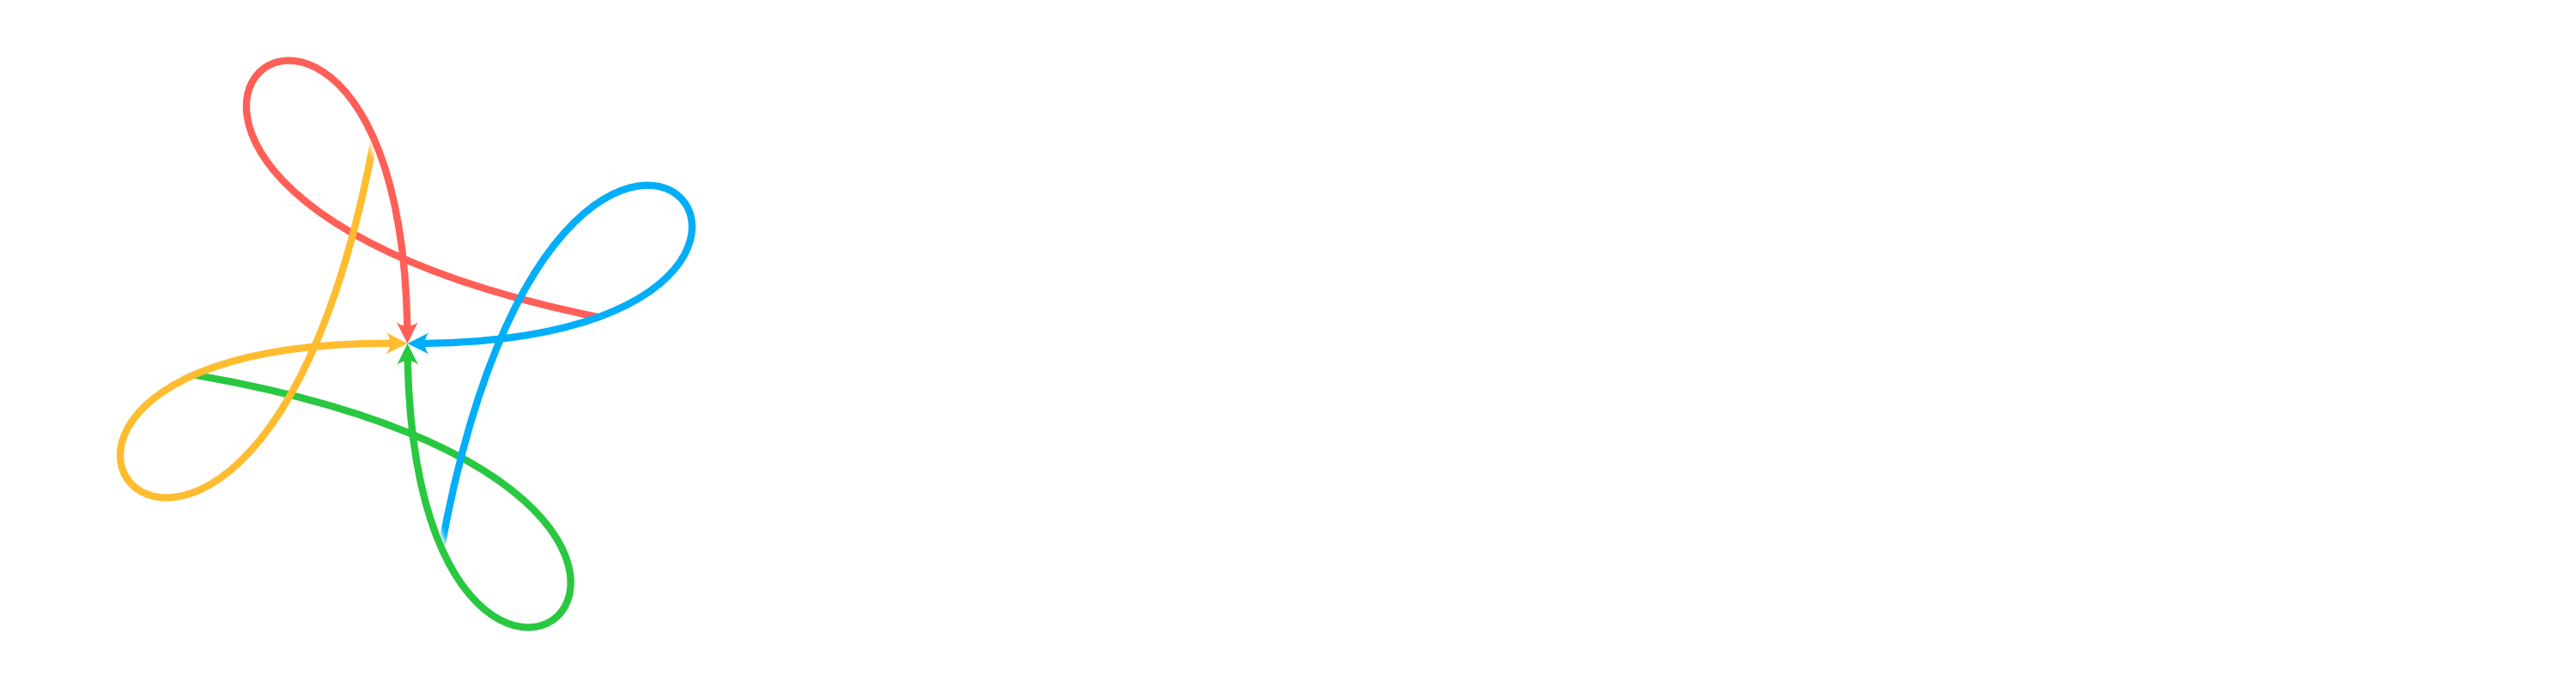 Hej, Apple! - Slovenski forum za Apple navdušence